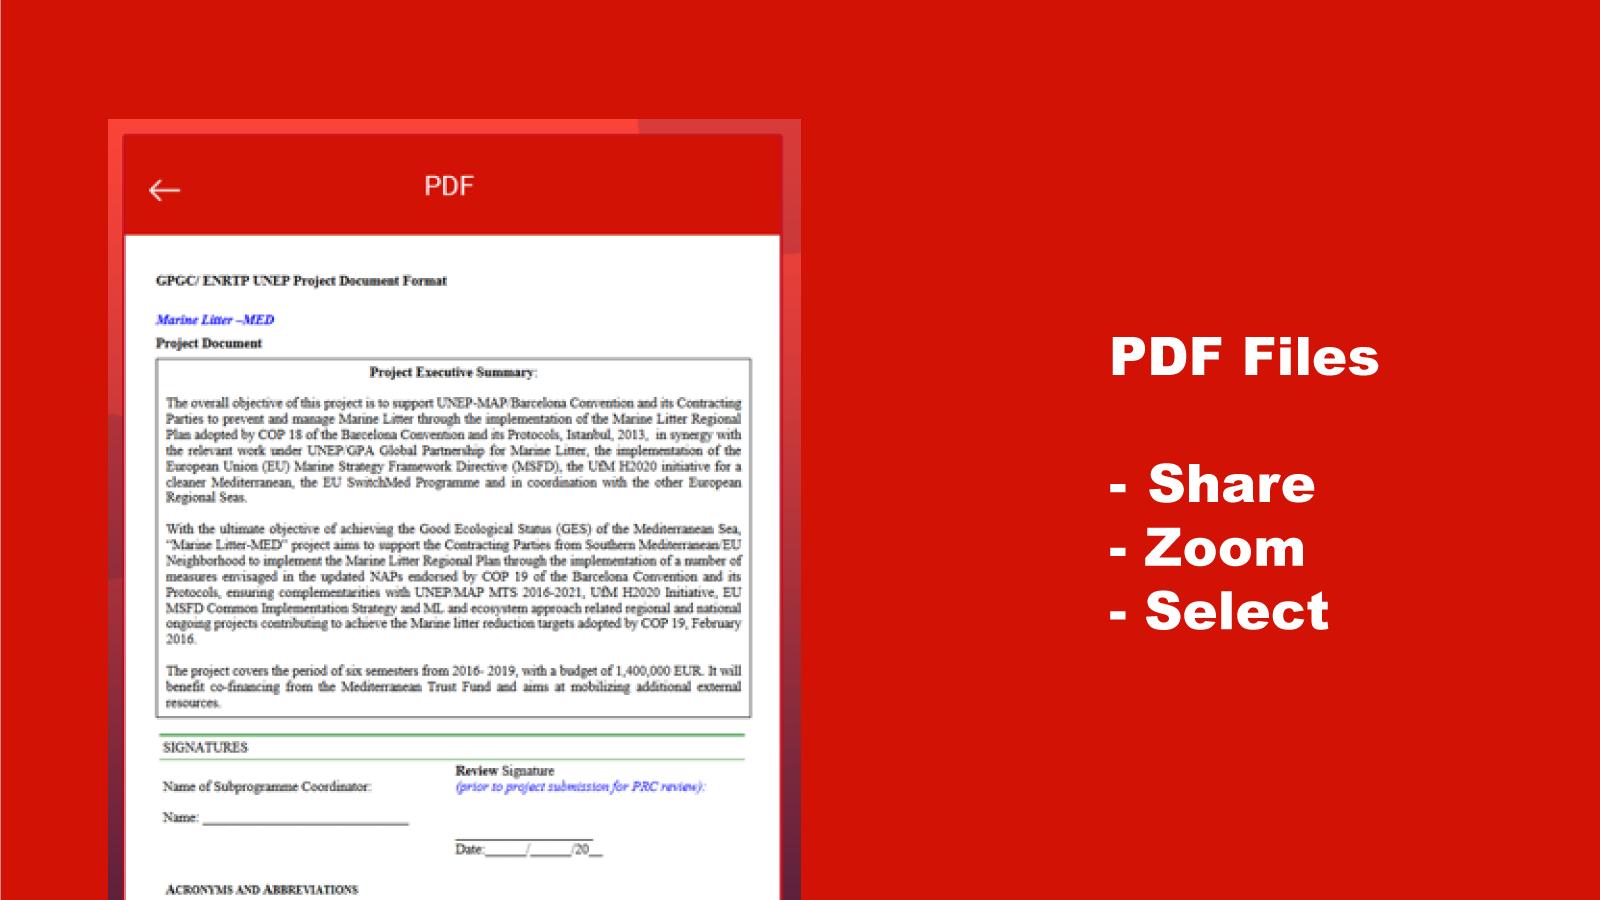 PPT Viewer: PPT & PPTX Reader & Presentation App